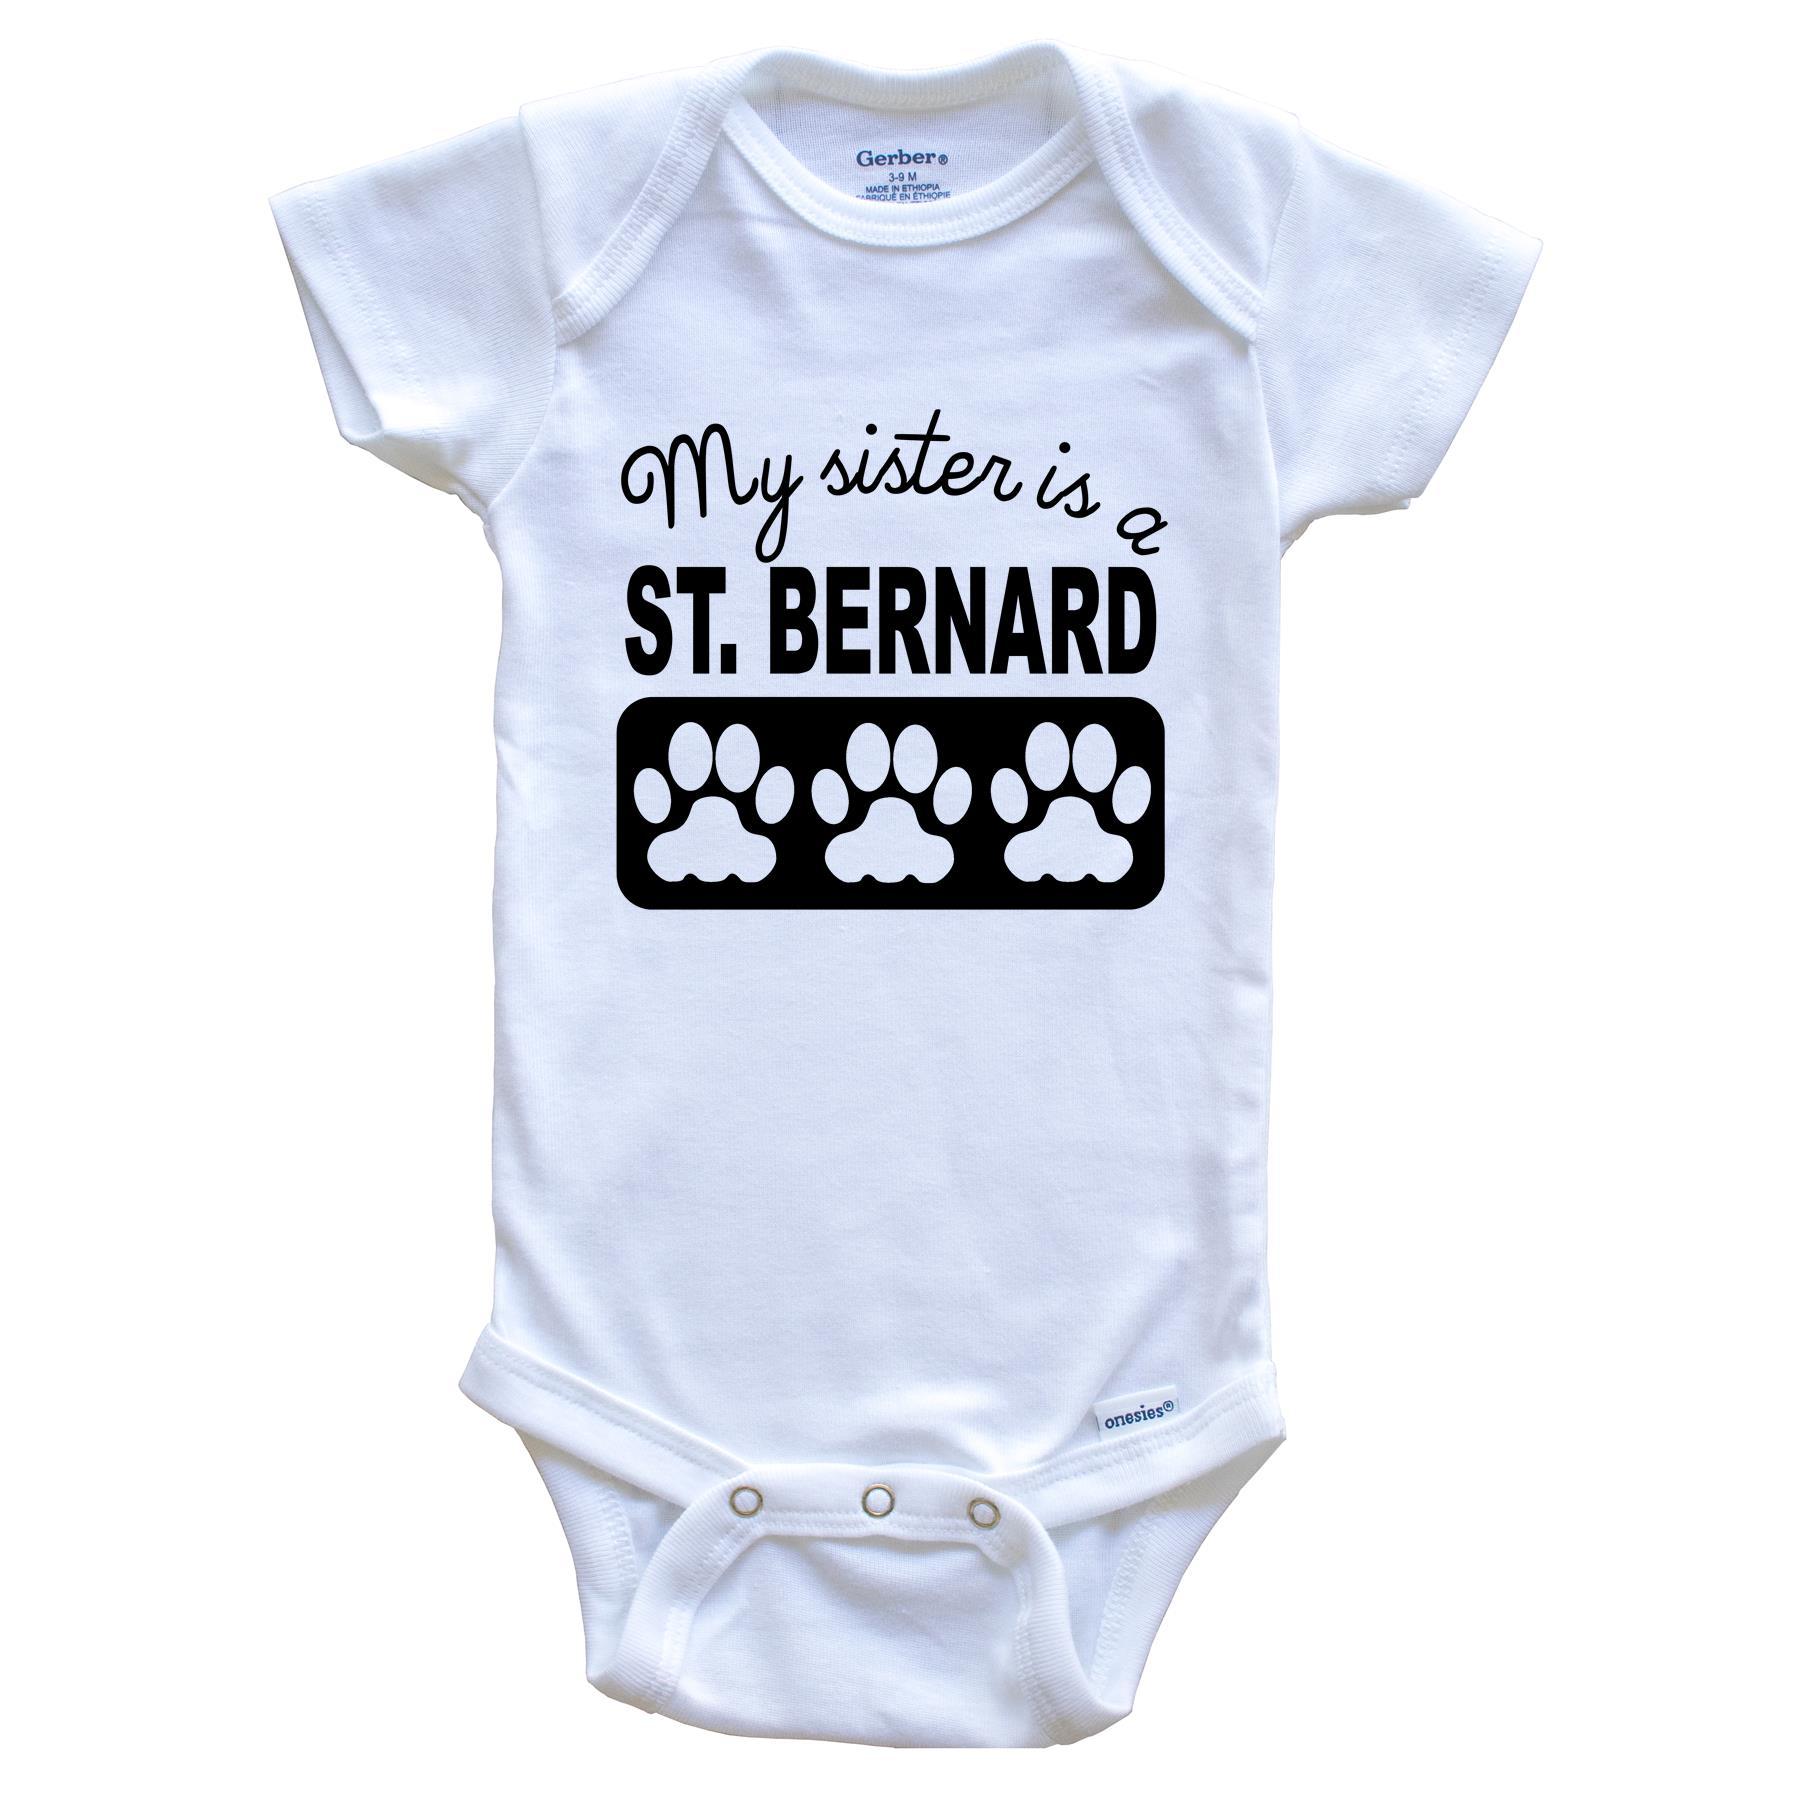 My Sister Is A St. Bernard Baby Onesie